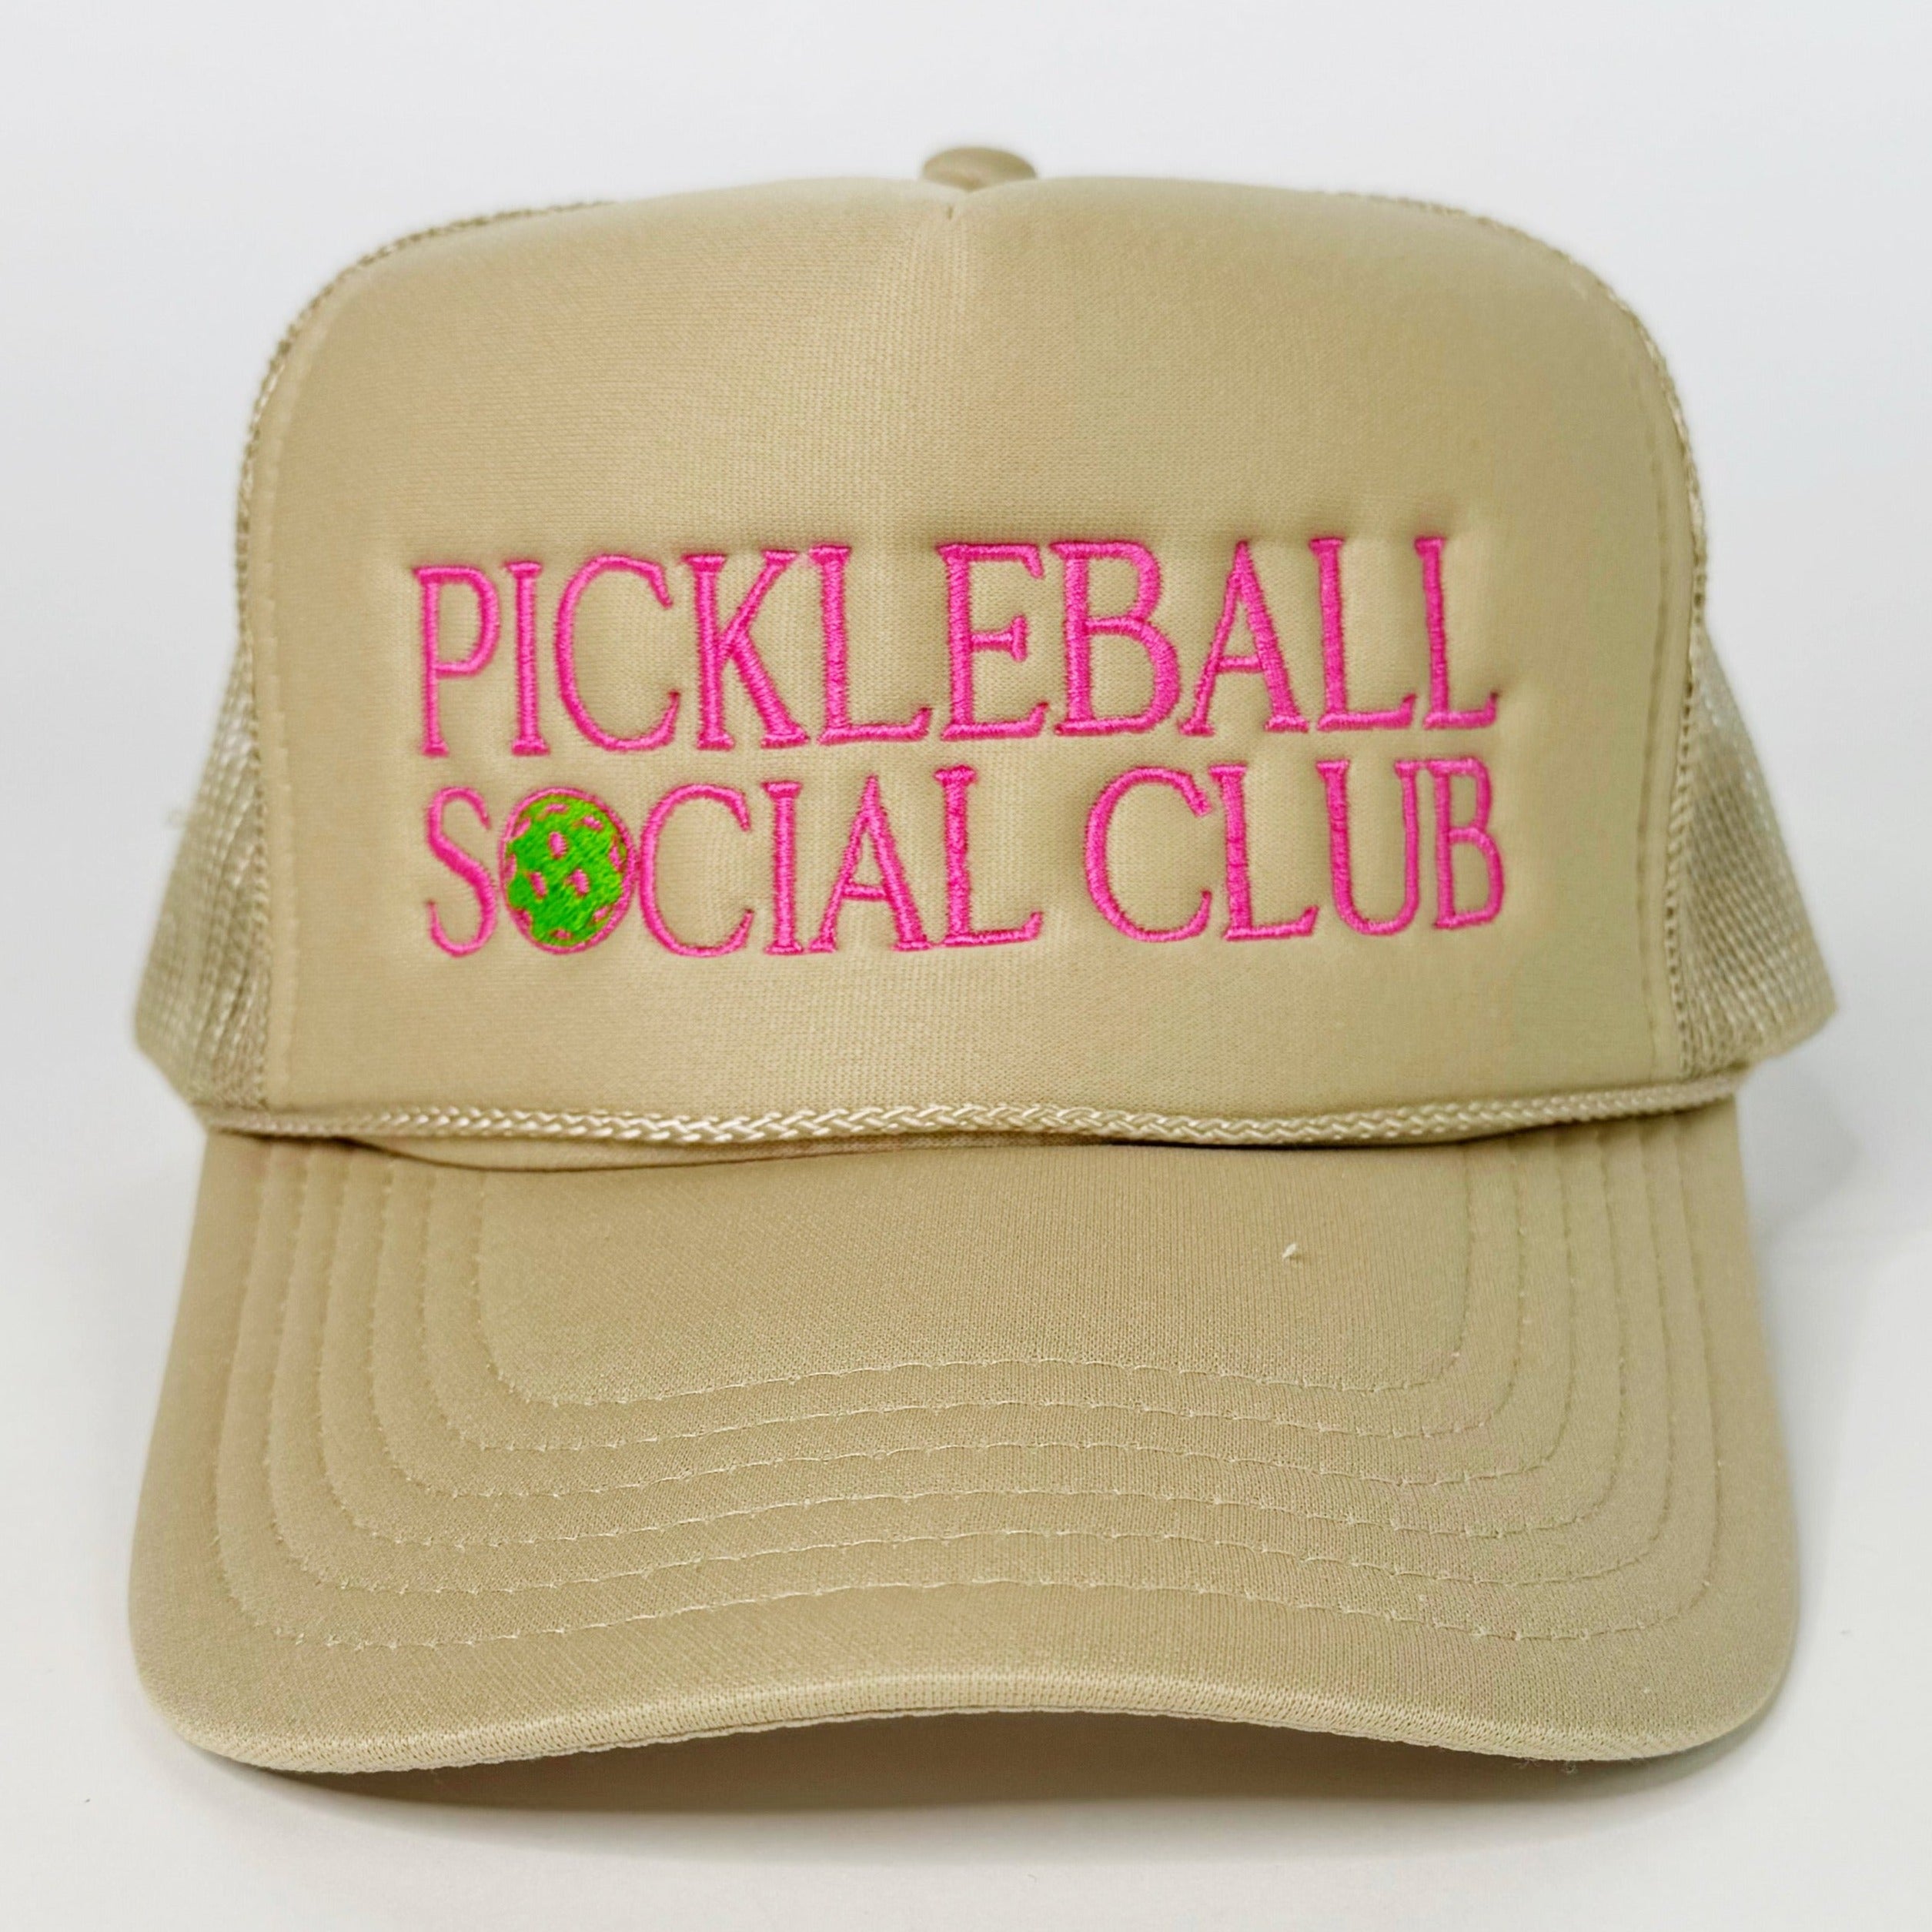 Pickleball Social Club Tan Trucker Hat